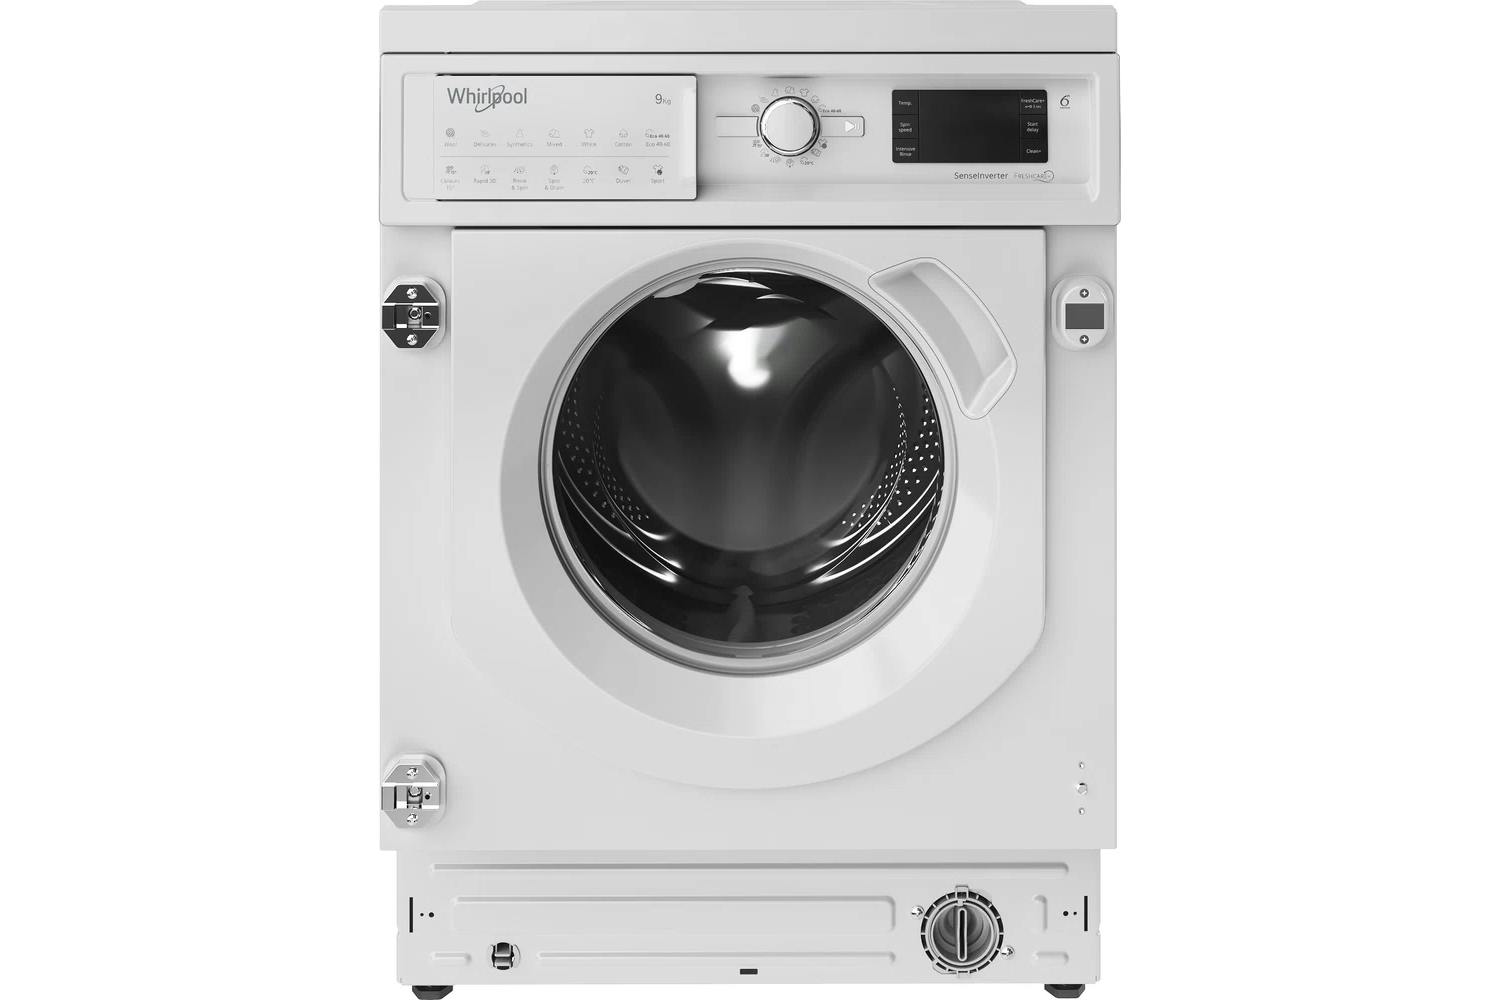 Whirlpool 9kg Built-in Washing Machine | BIWMWG91485UK